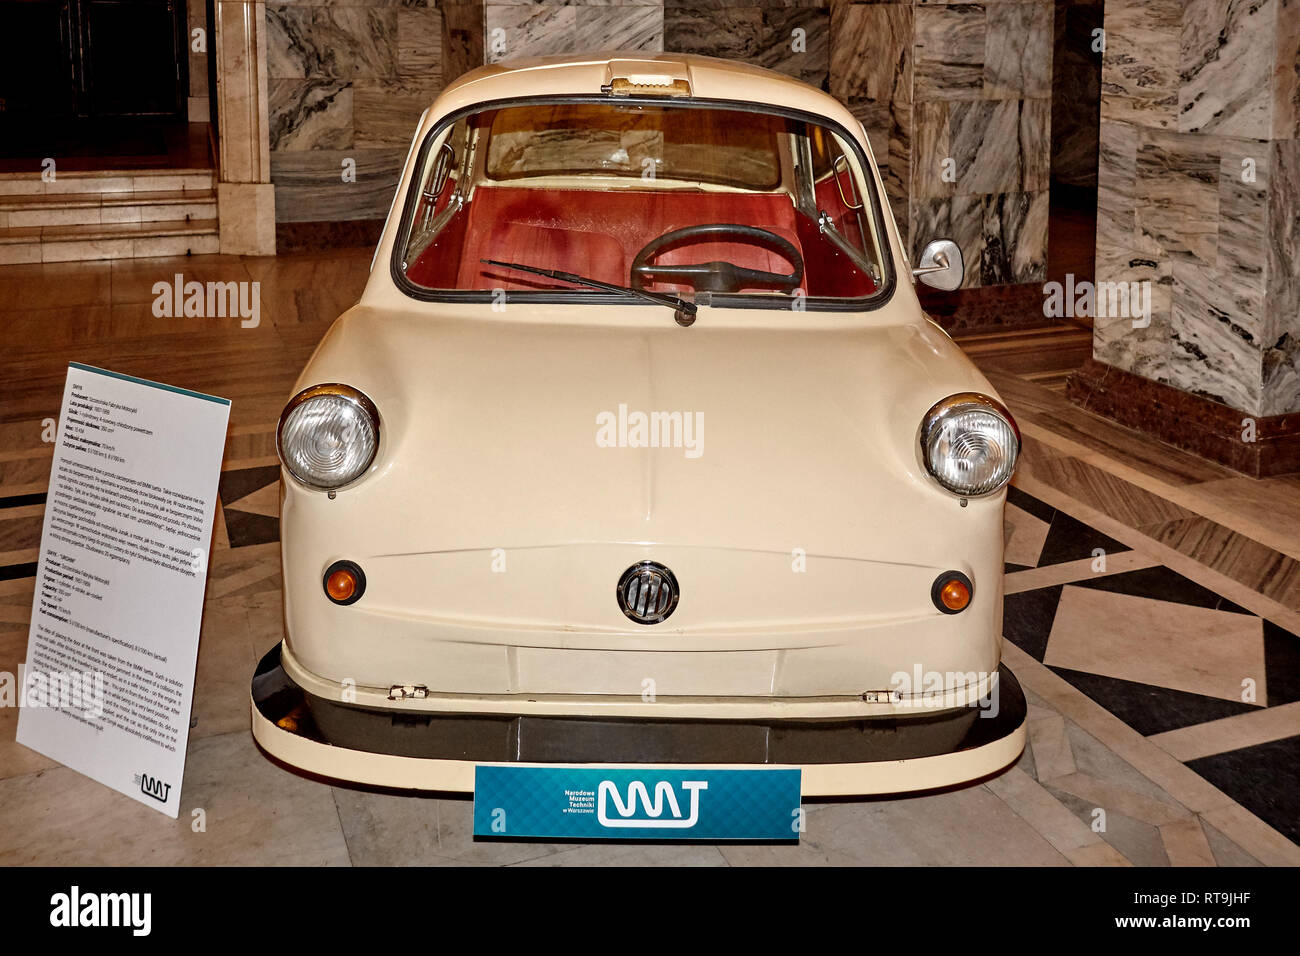 Varsavia, Polonia - 17 settembre 2018. Smyk concept car esposti nel Museo della Tecnologia Foto Stock